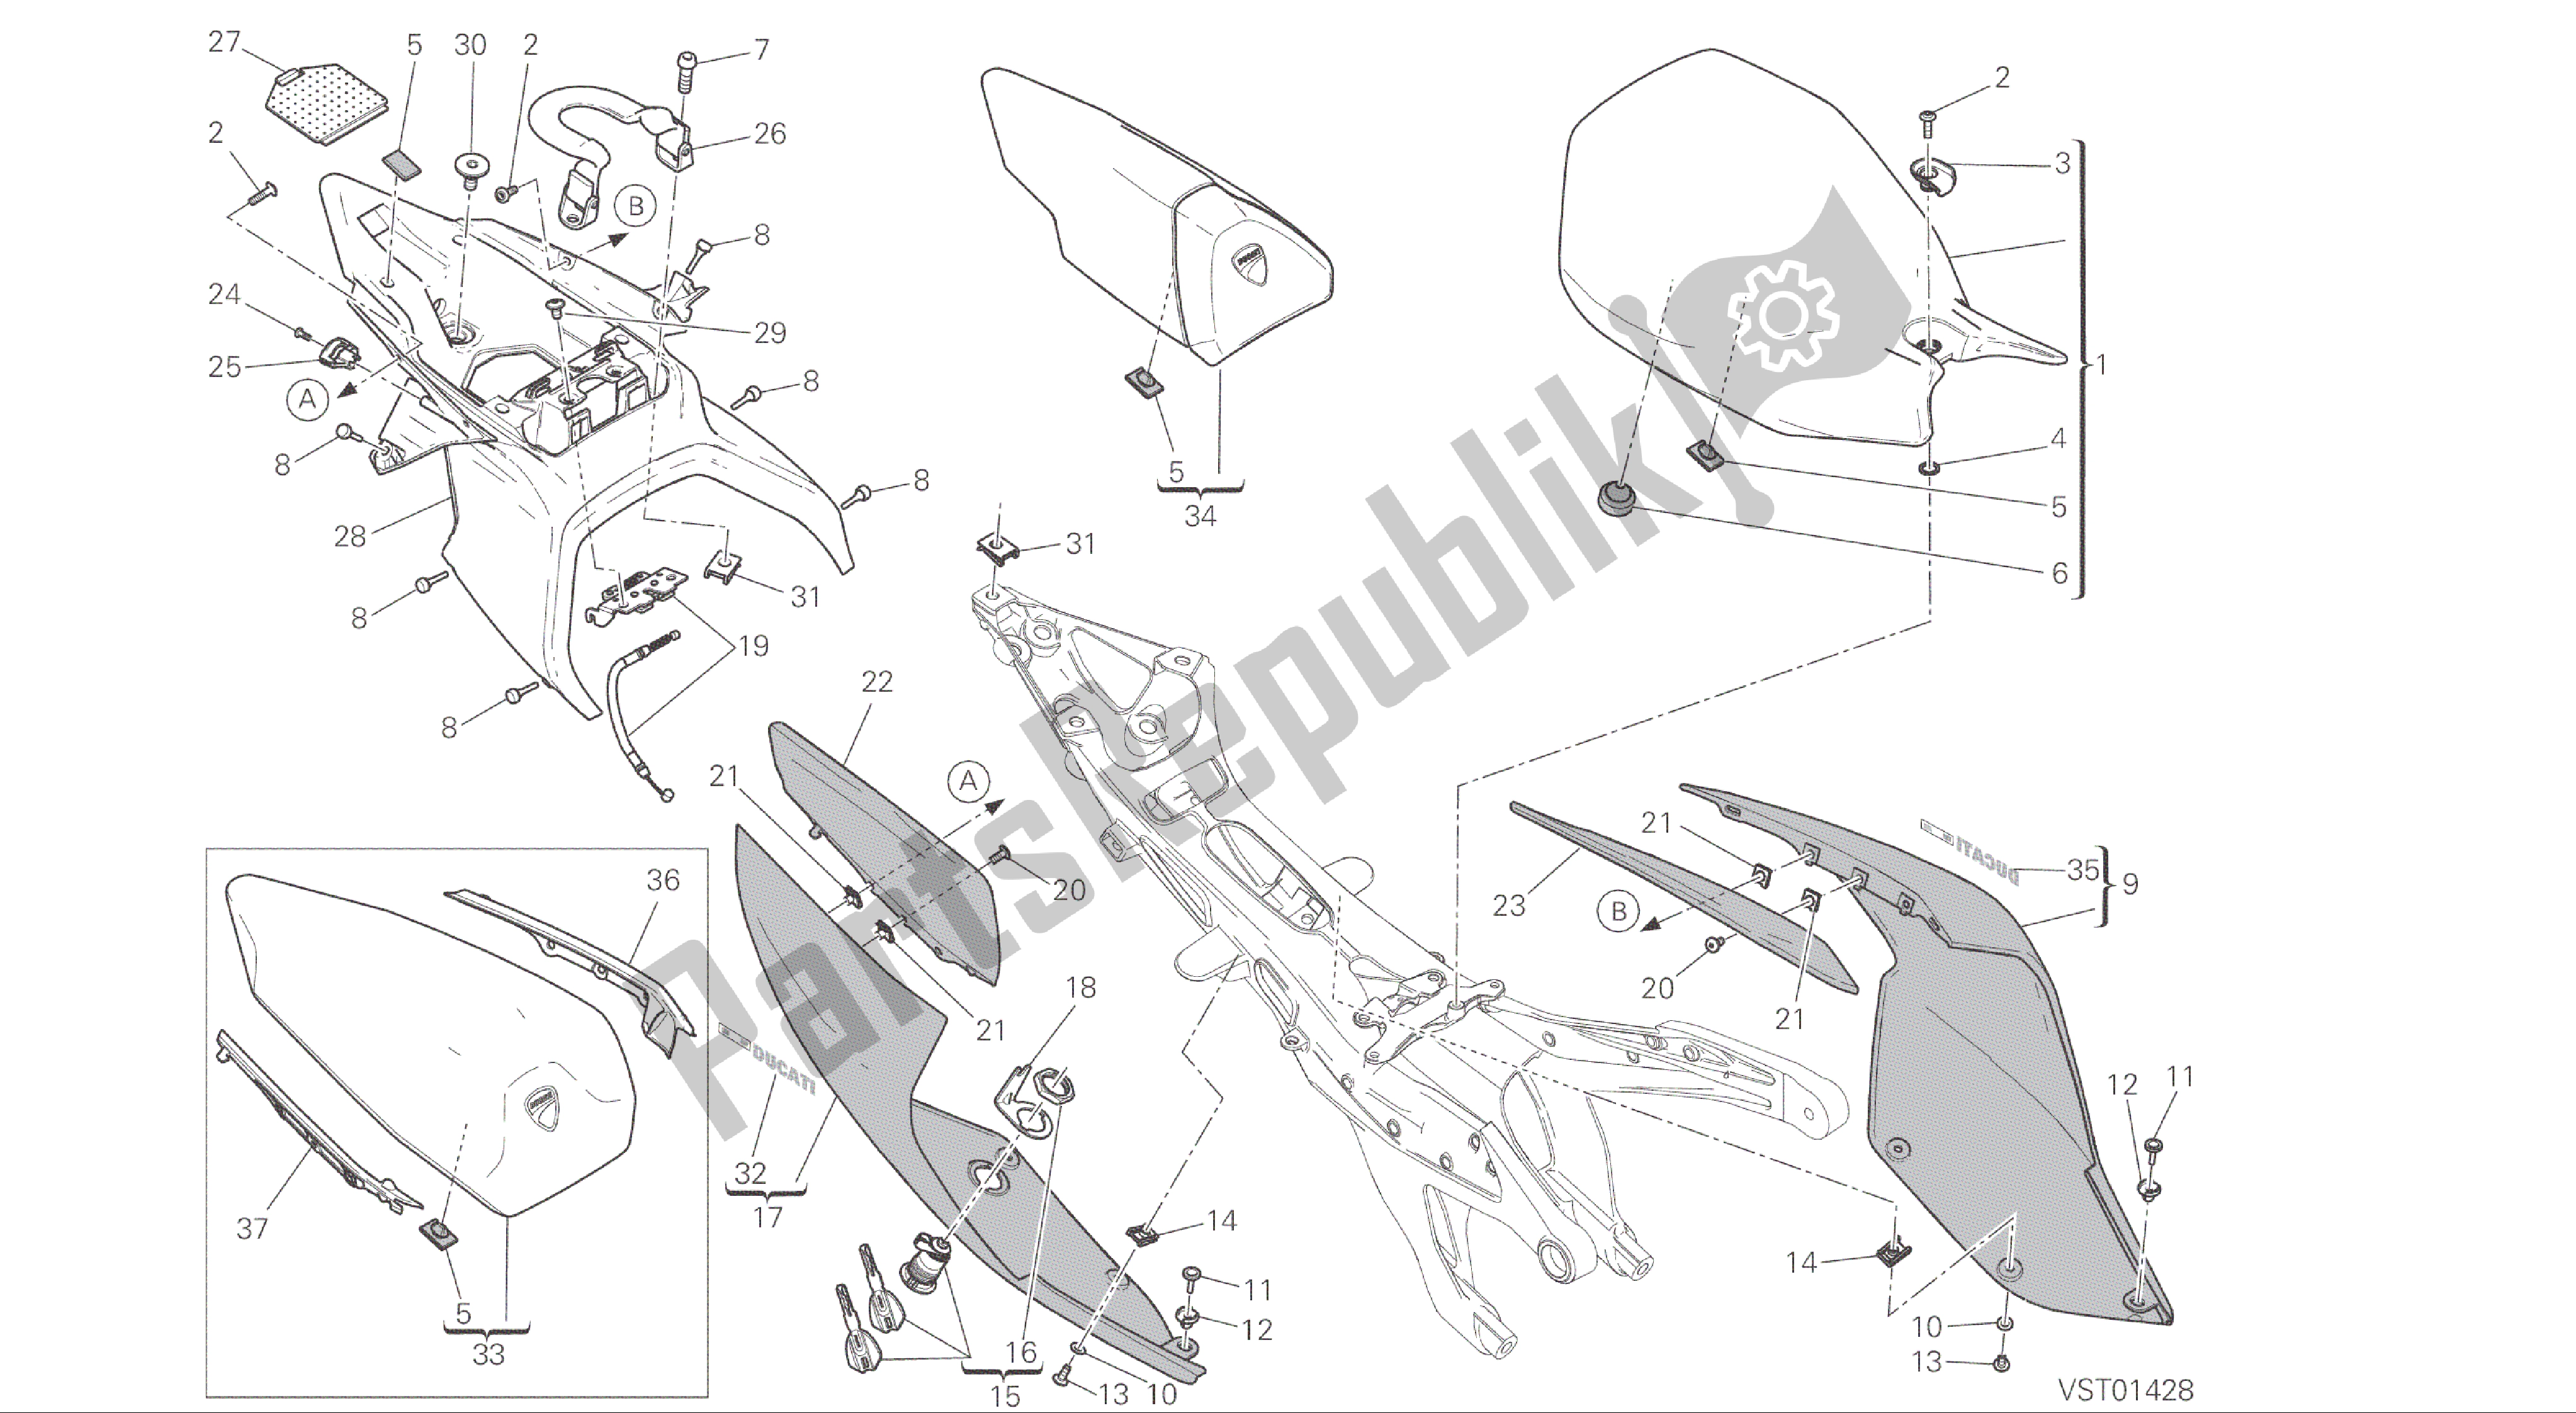 Todas las partes para Dibujo 033 - Asiento [mod: 1299; Xst: Marco De Grupo Aus, Eur, Fra, Jap, Twn] de Ducati Panigale ABS 1299 2016